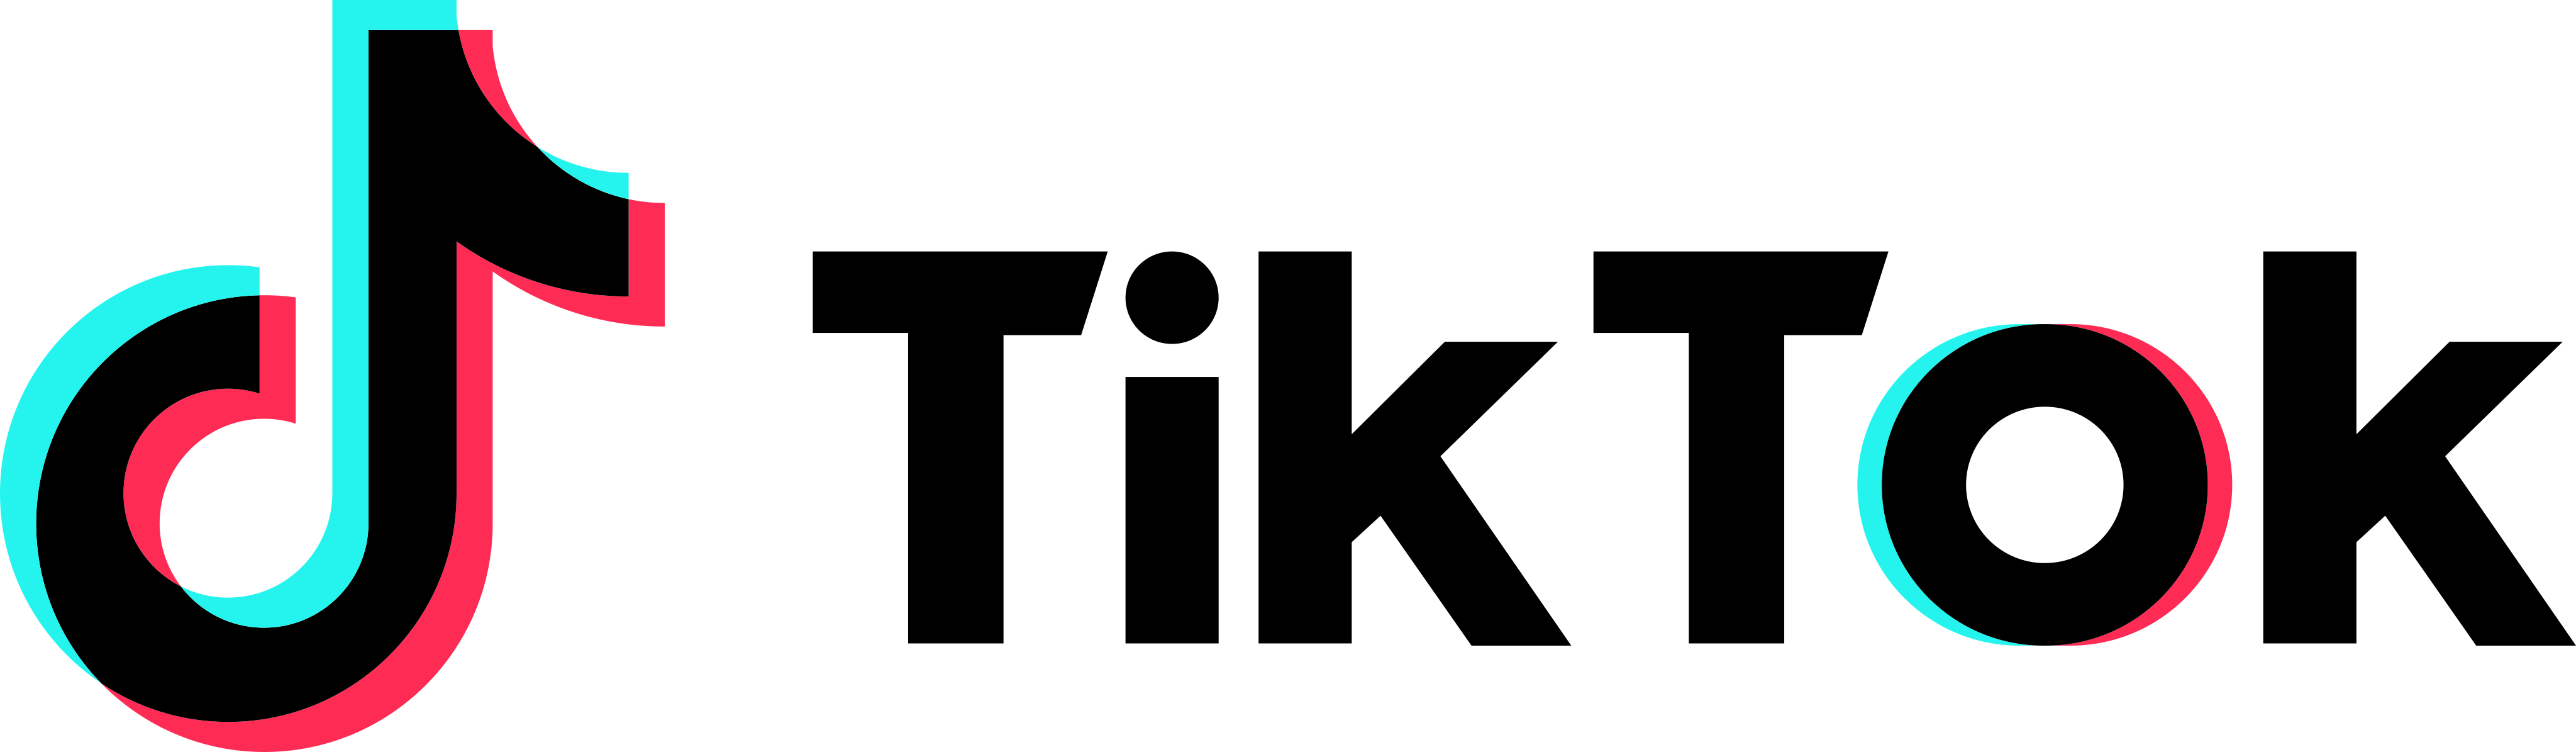 Tiktok logotipo PNG pic